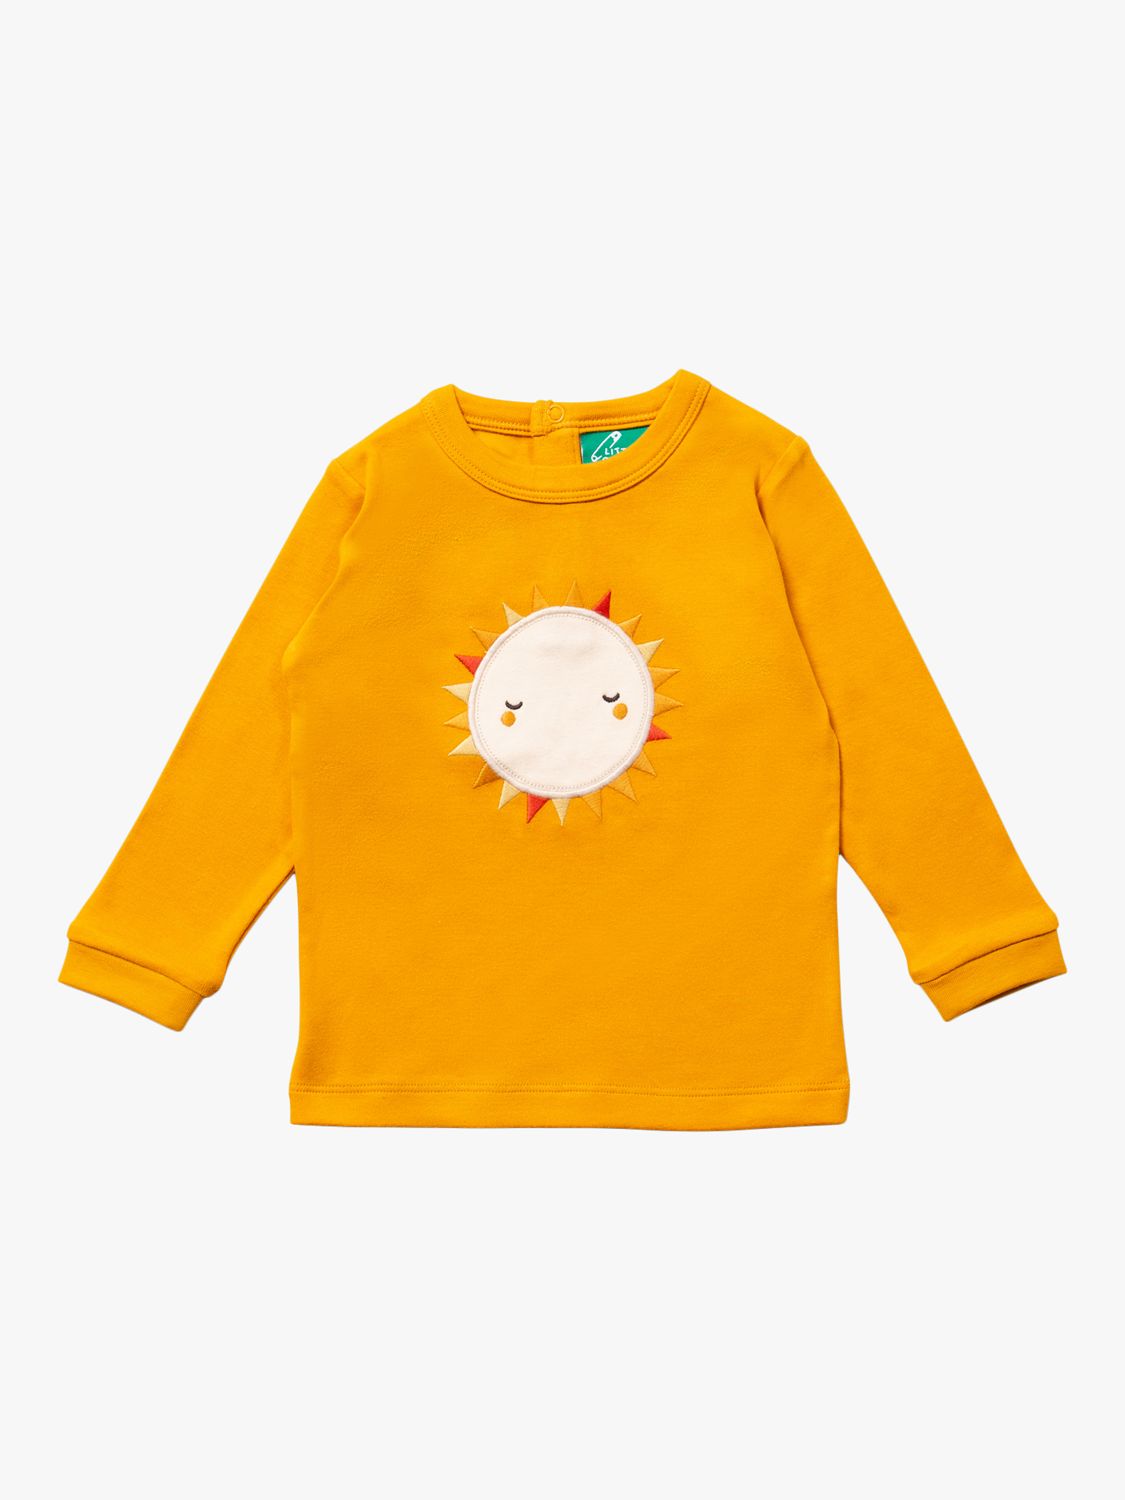 Детская футболка Sunshine с длинными рукавами из органического хлопка Little Green Radicals, желтый/мульти